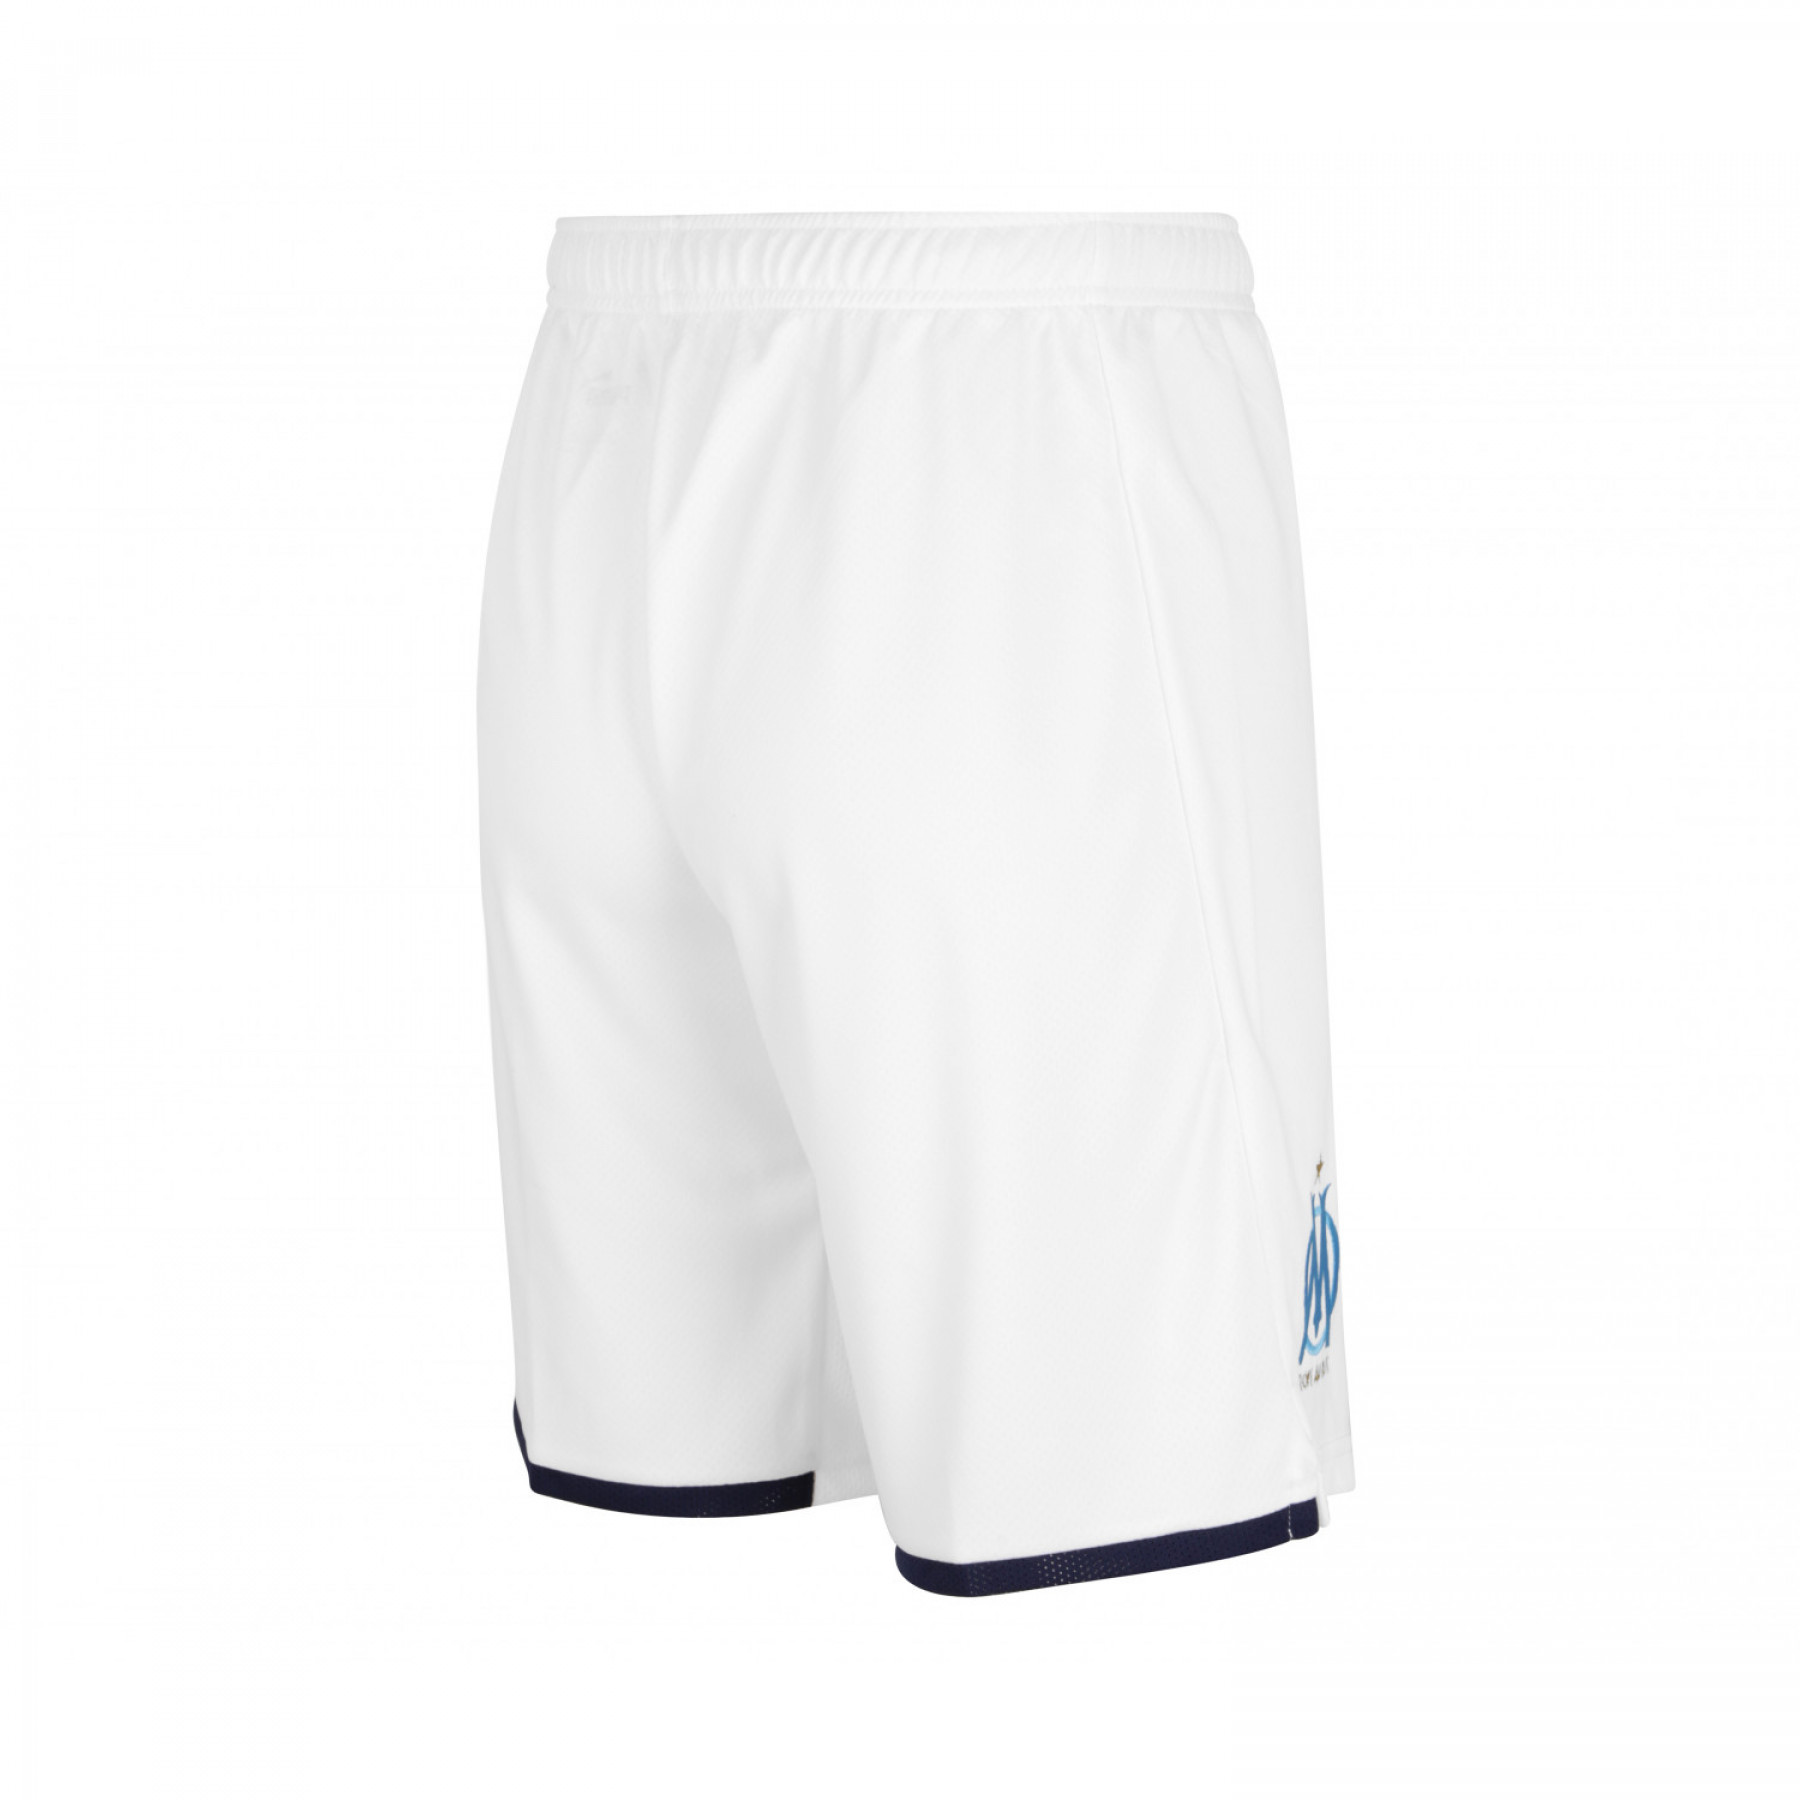 Shorts fromomicile OM 2021/22